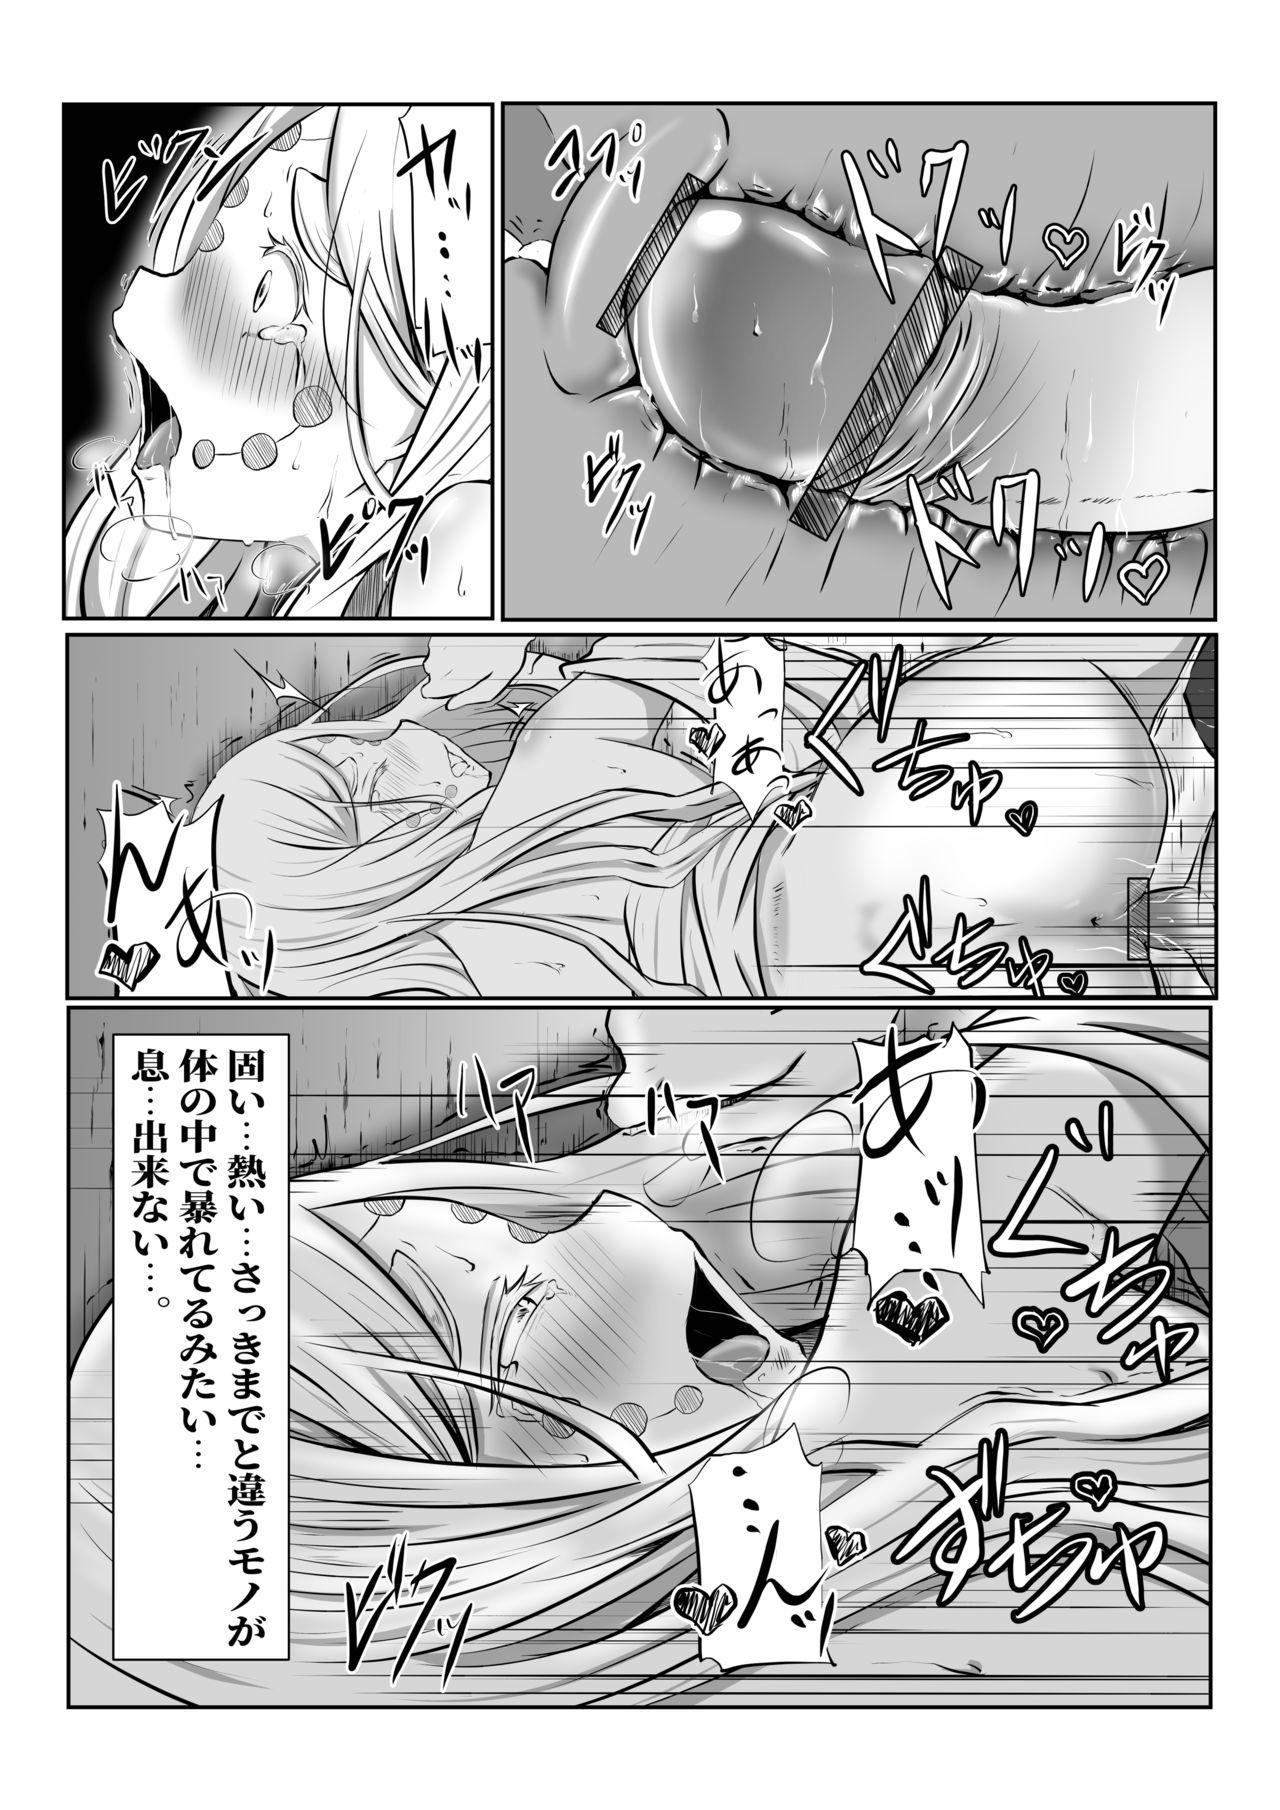 Long Hair Hinokami Sex. - Kimetsu no yaiba | demon slayer Staxxx - Page 26